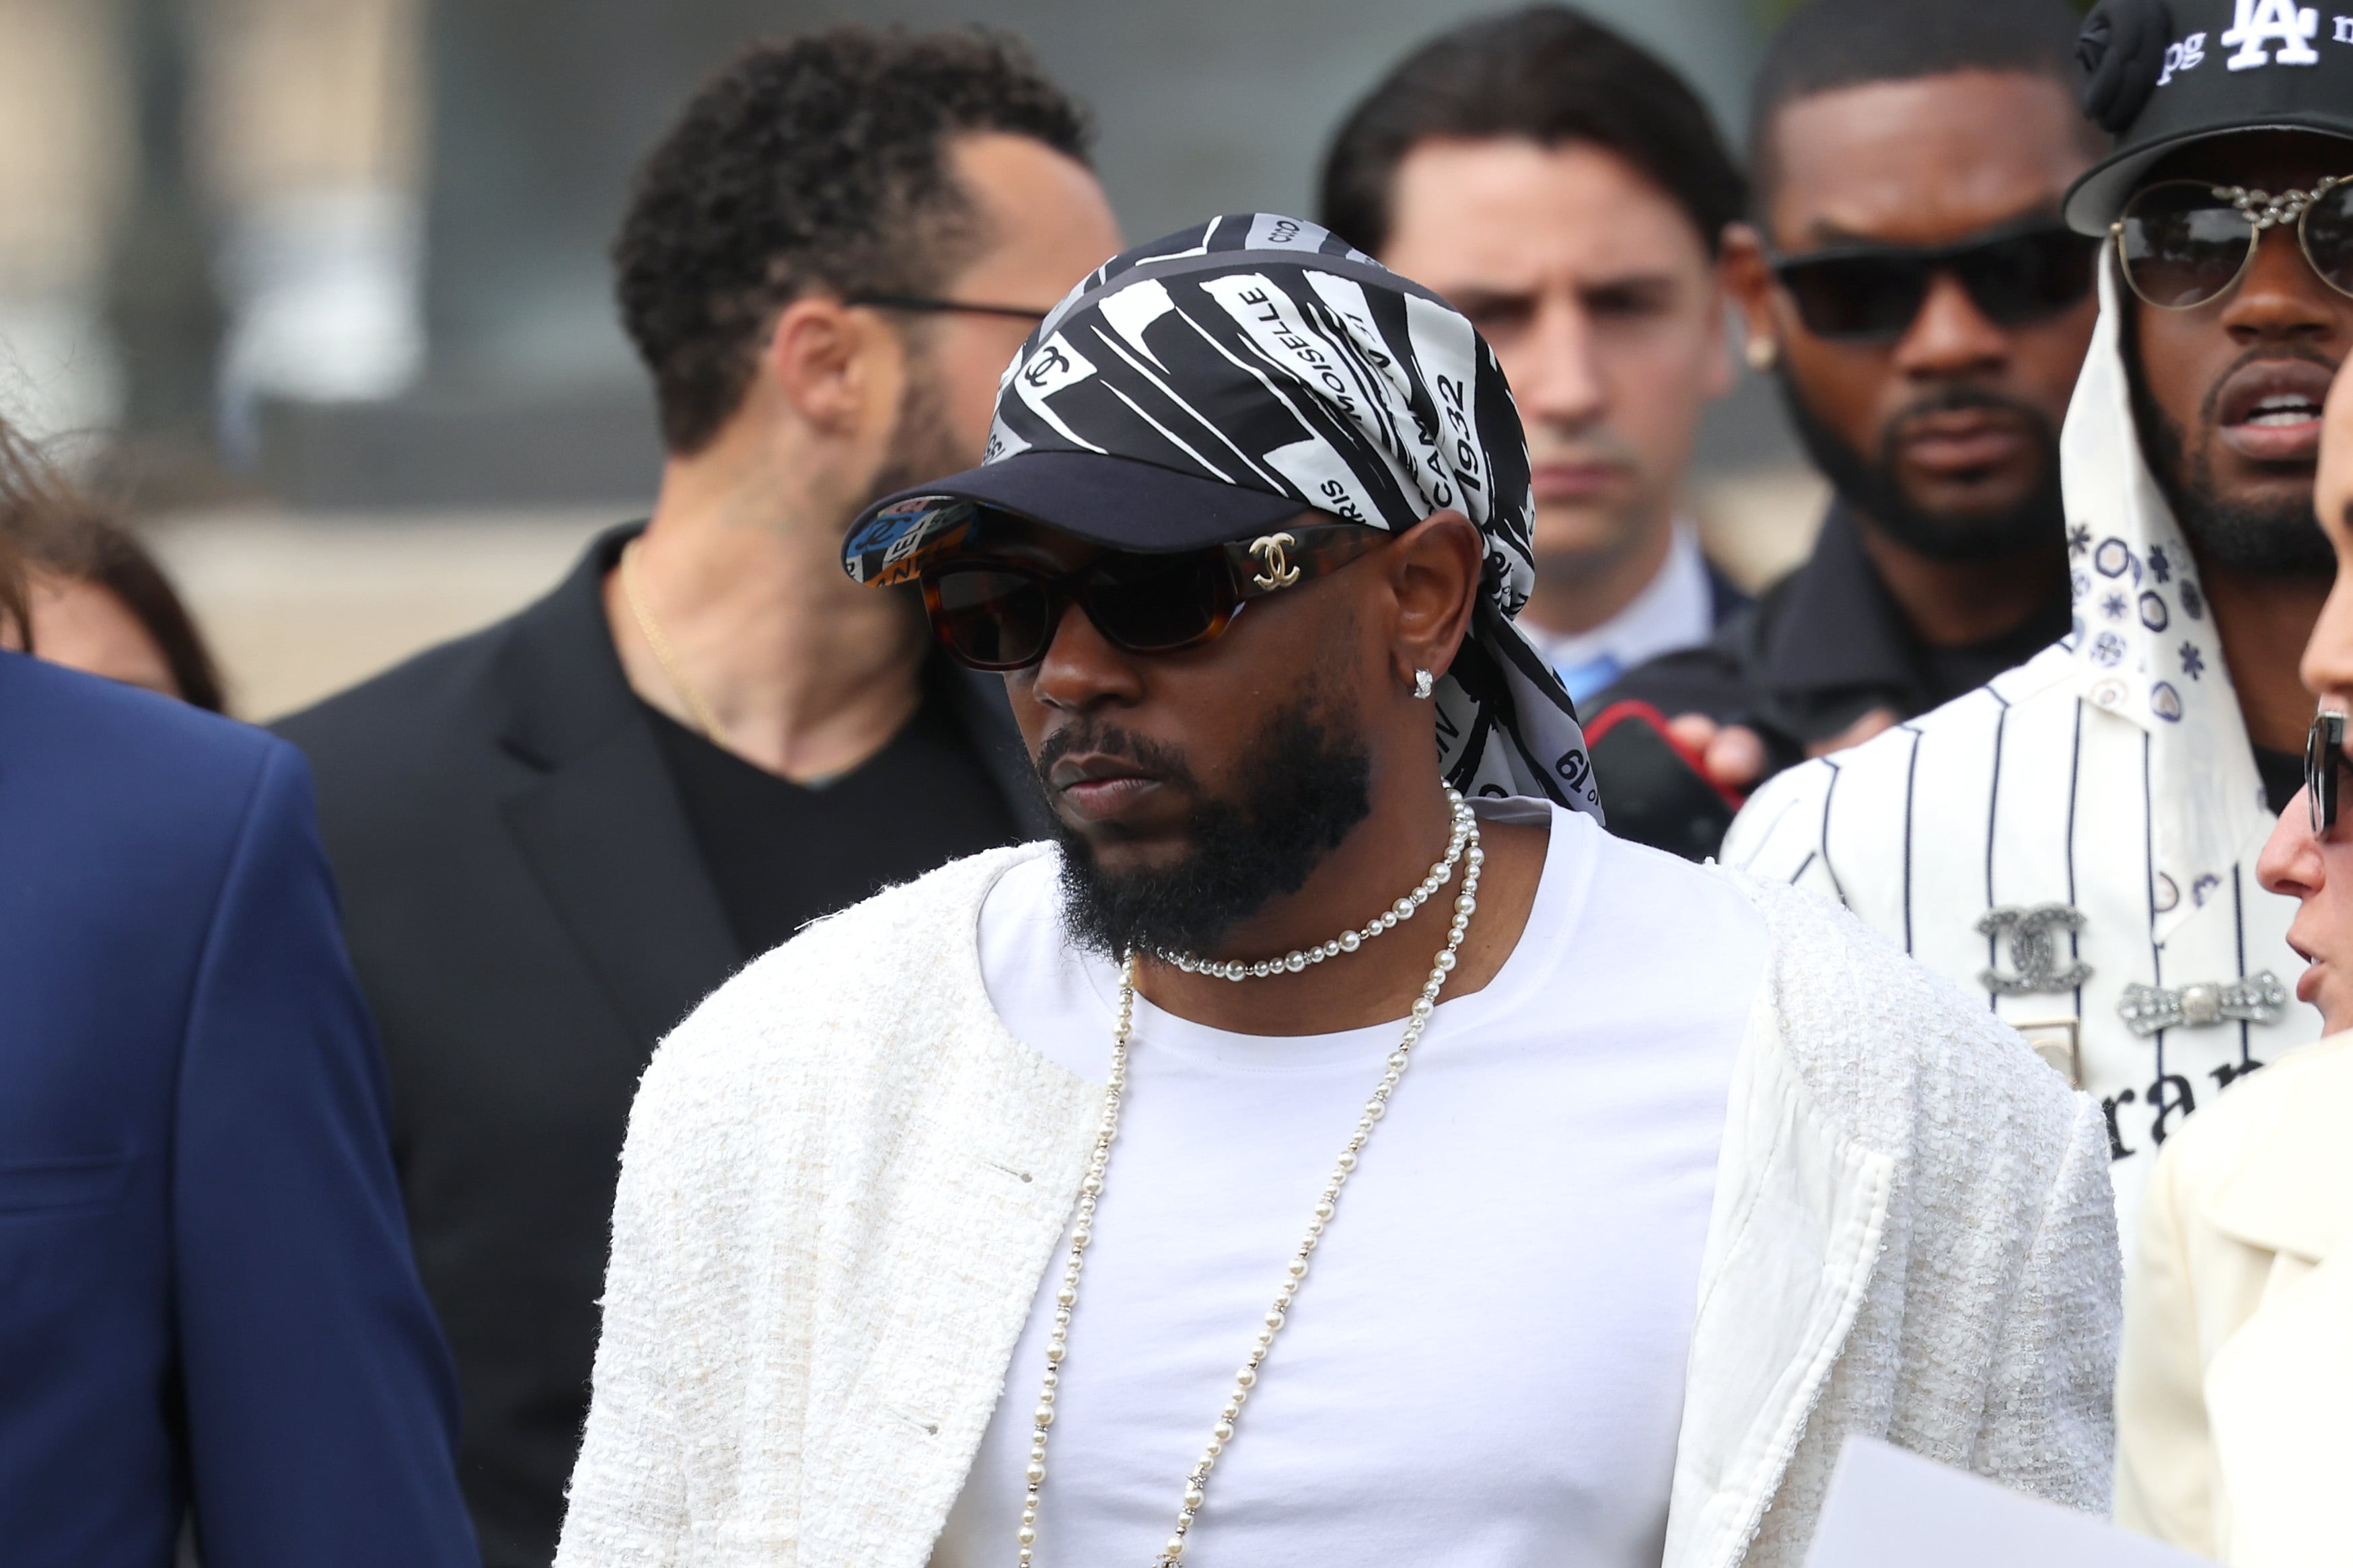 Kendrick Lamar with actress Lupita Nyong'o at Paris Fashion Week.